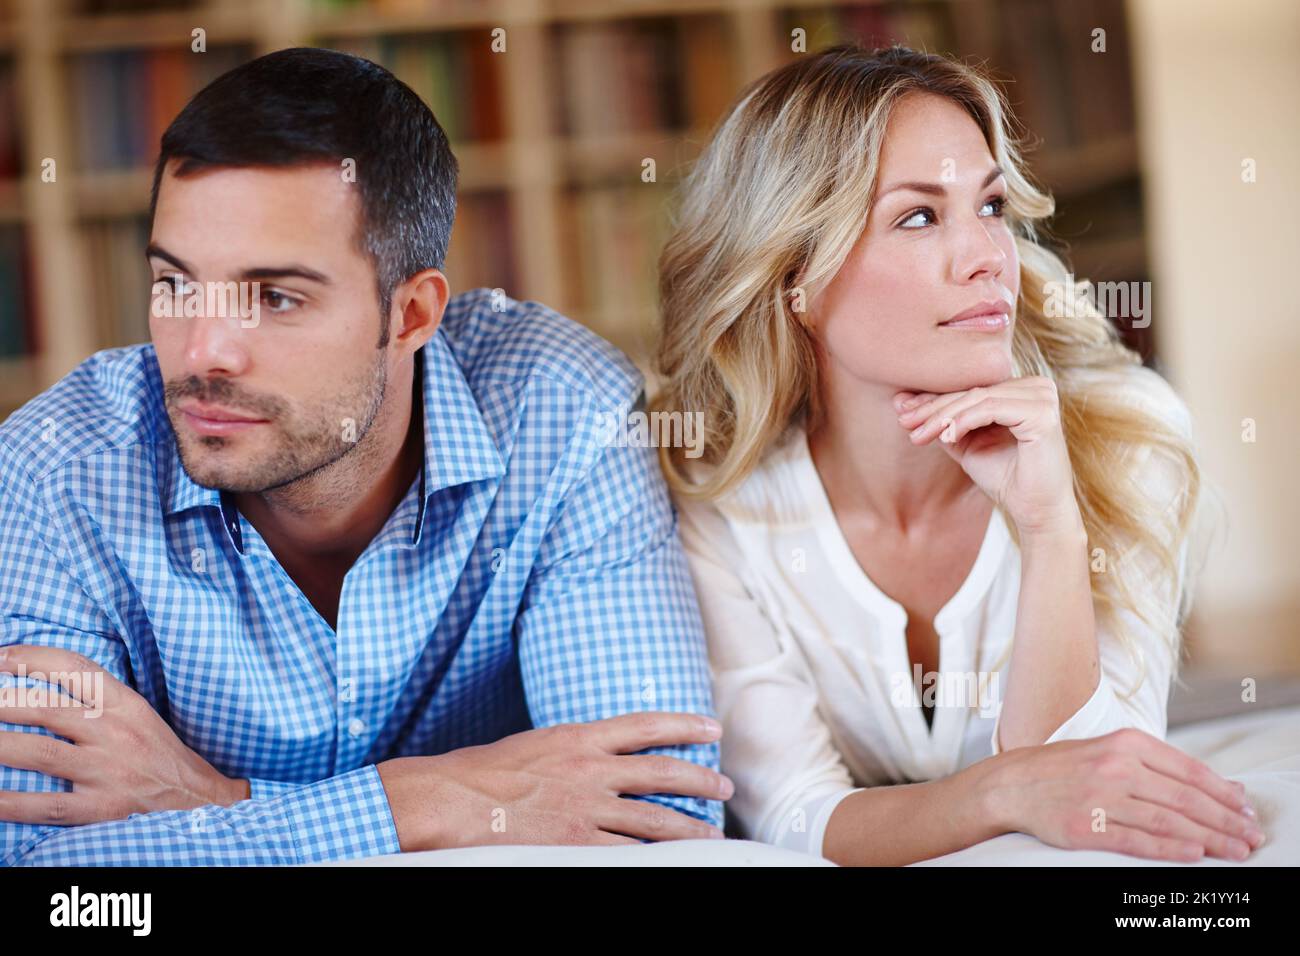 Jedes Paar hat manchmal seine Unterschiede. Ein junges Paar mit Beziehungsproblemen sitzt zu Hause. Stockfoto